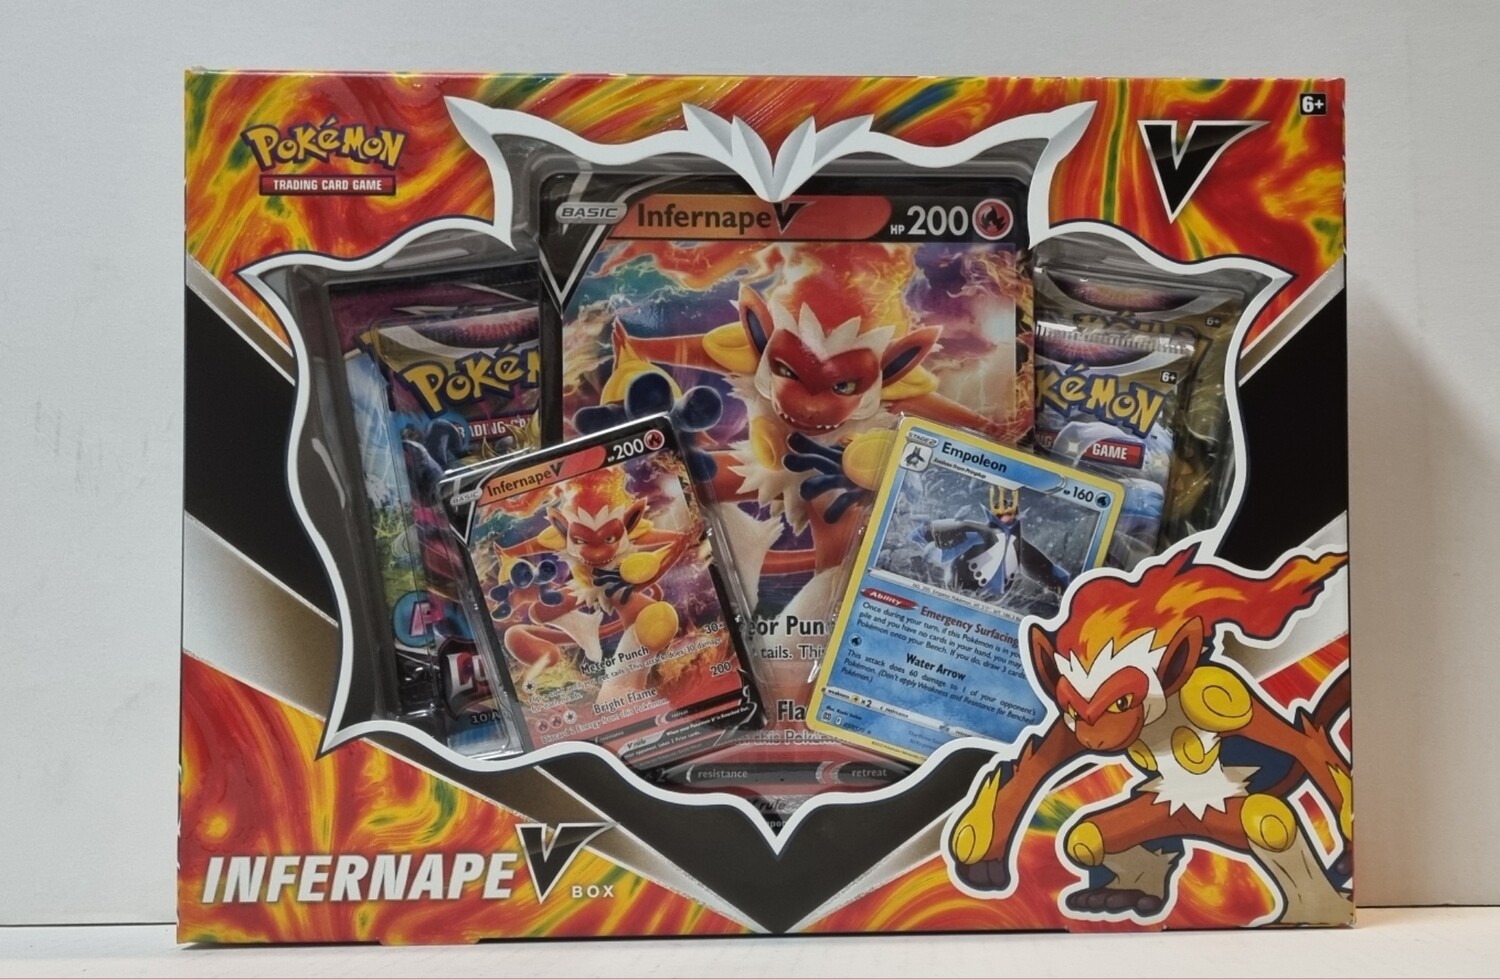 V-Box, Infernape, The Battlefield Ablaze!, Pokémon